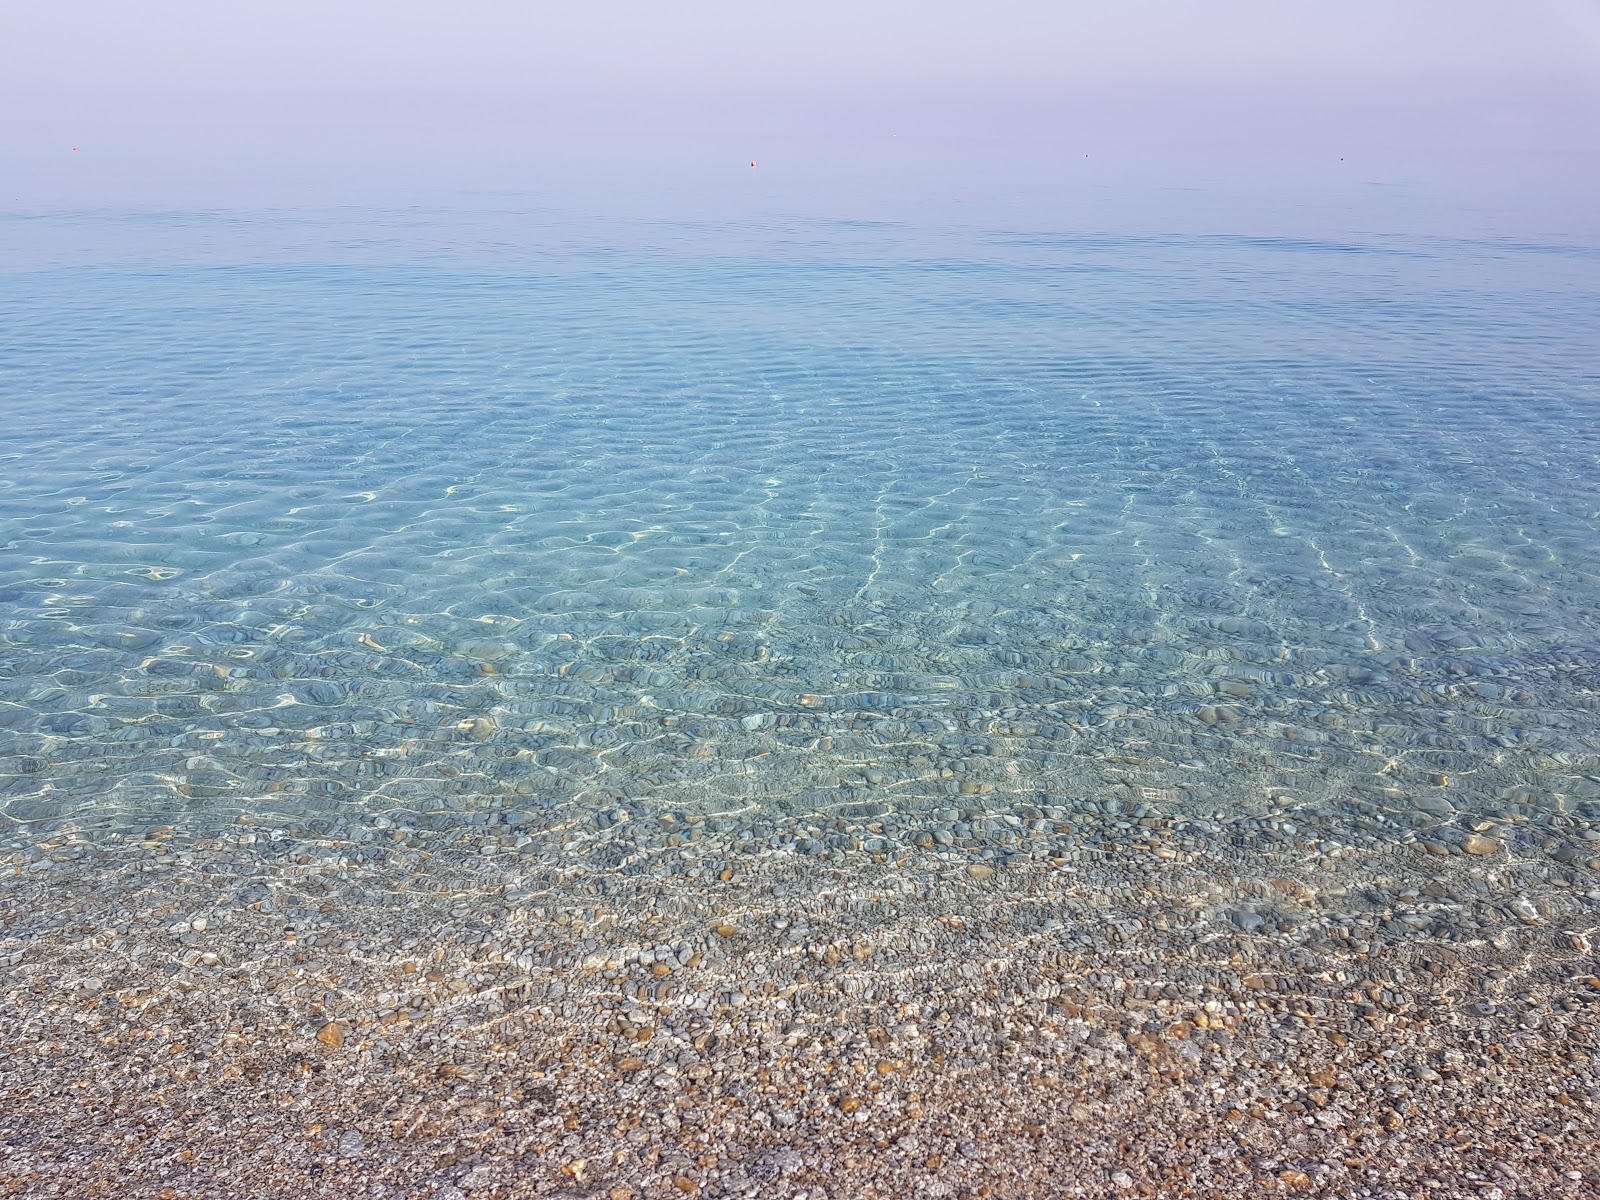 Villaggio del Golfo beach'in fotoğrafı kısmen temiz temizlik seviyesi ile